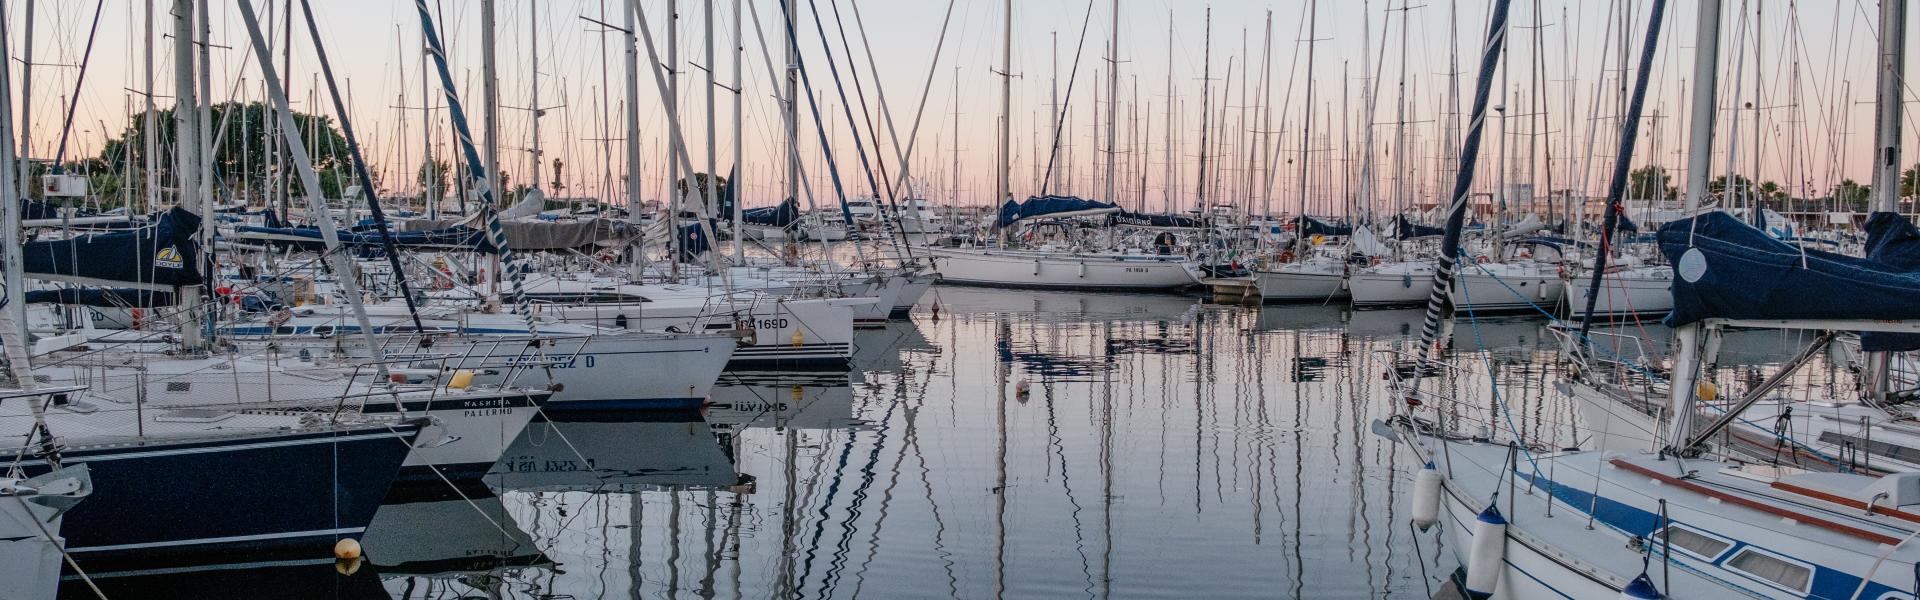 Réservez votre location de vacances avec un bateau en Italie  - Casamundo